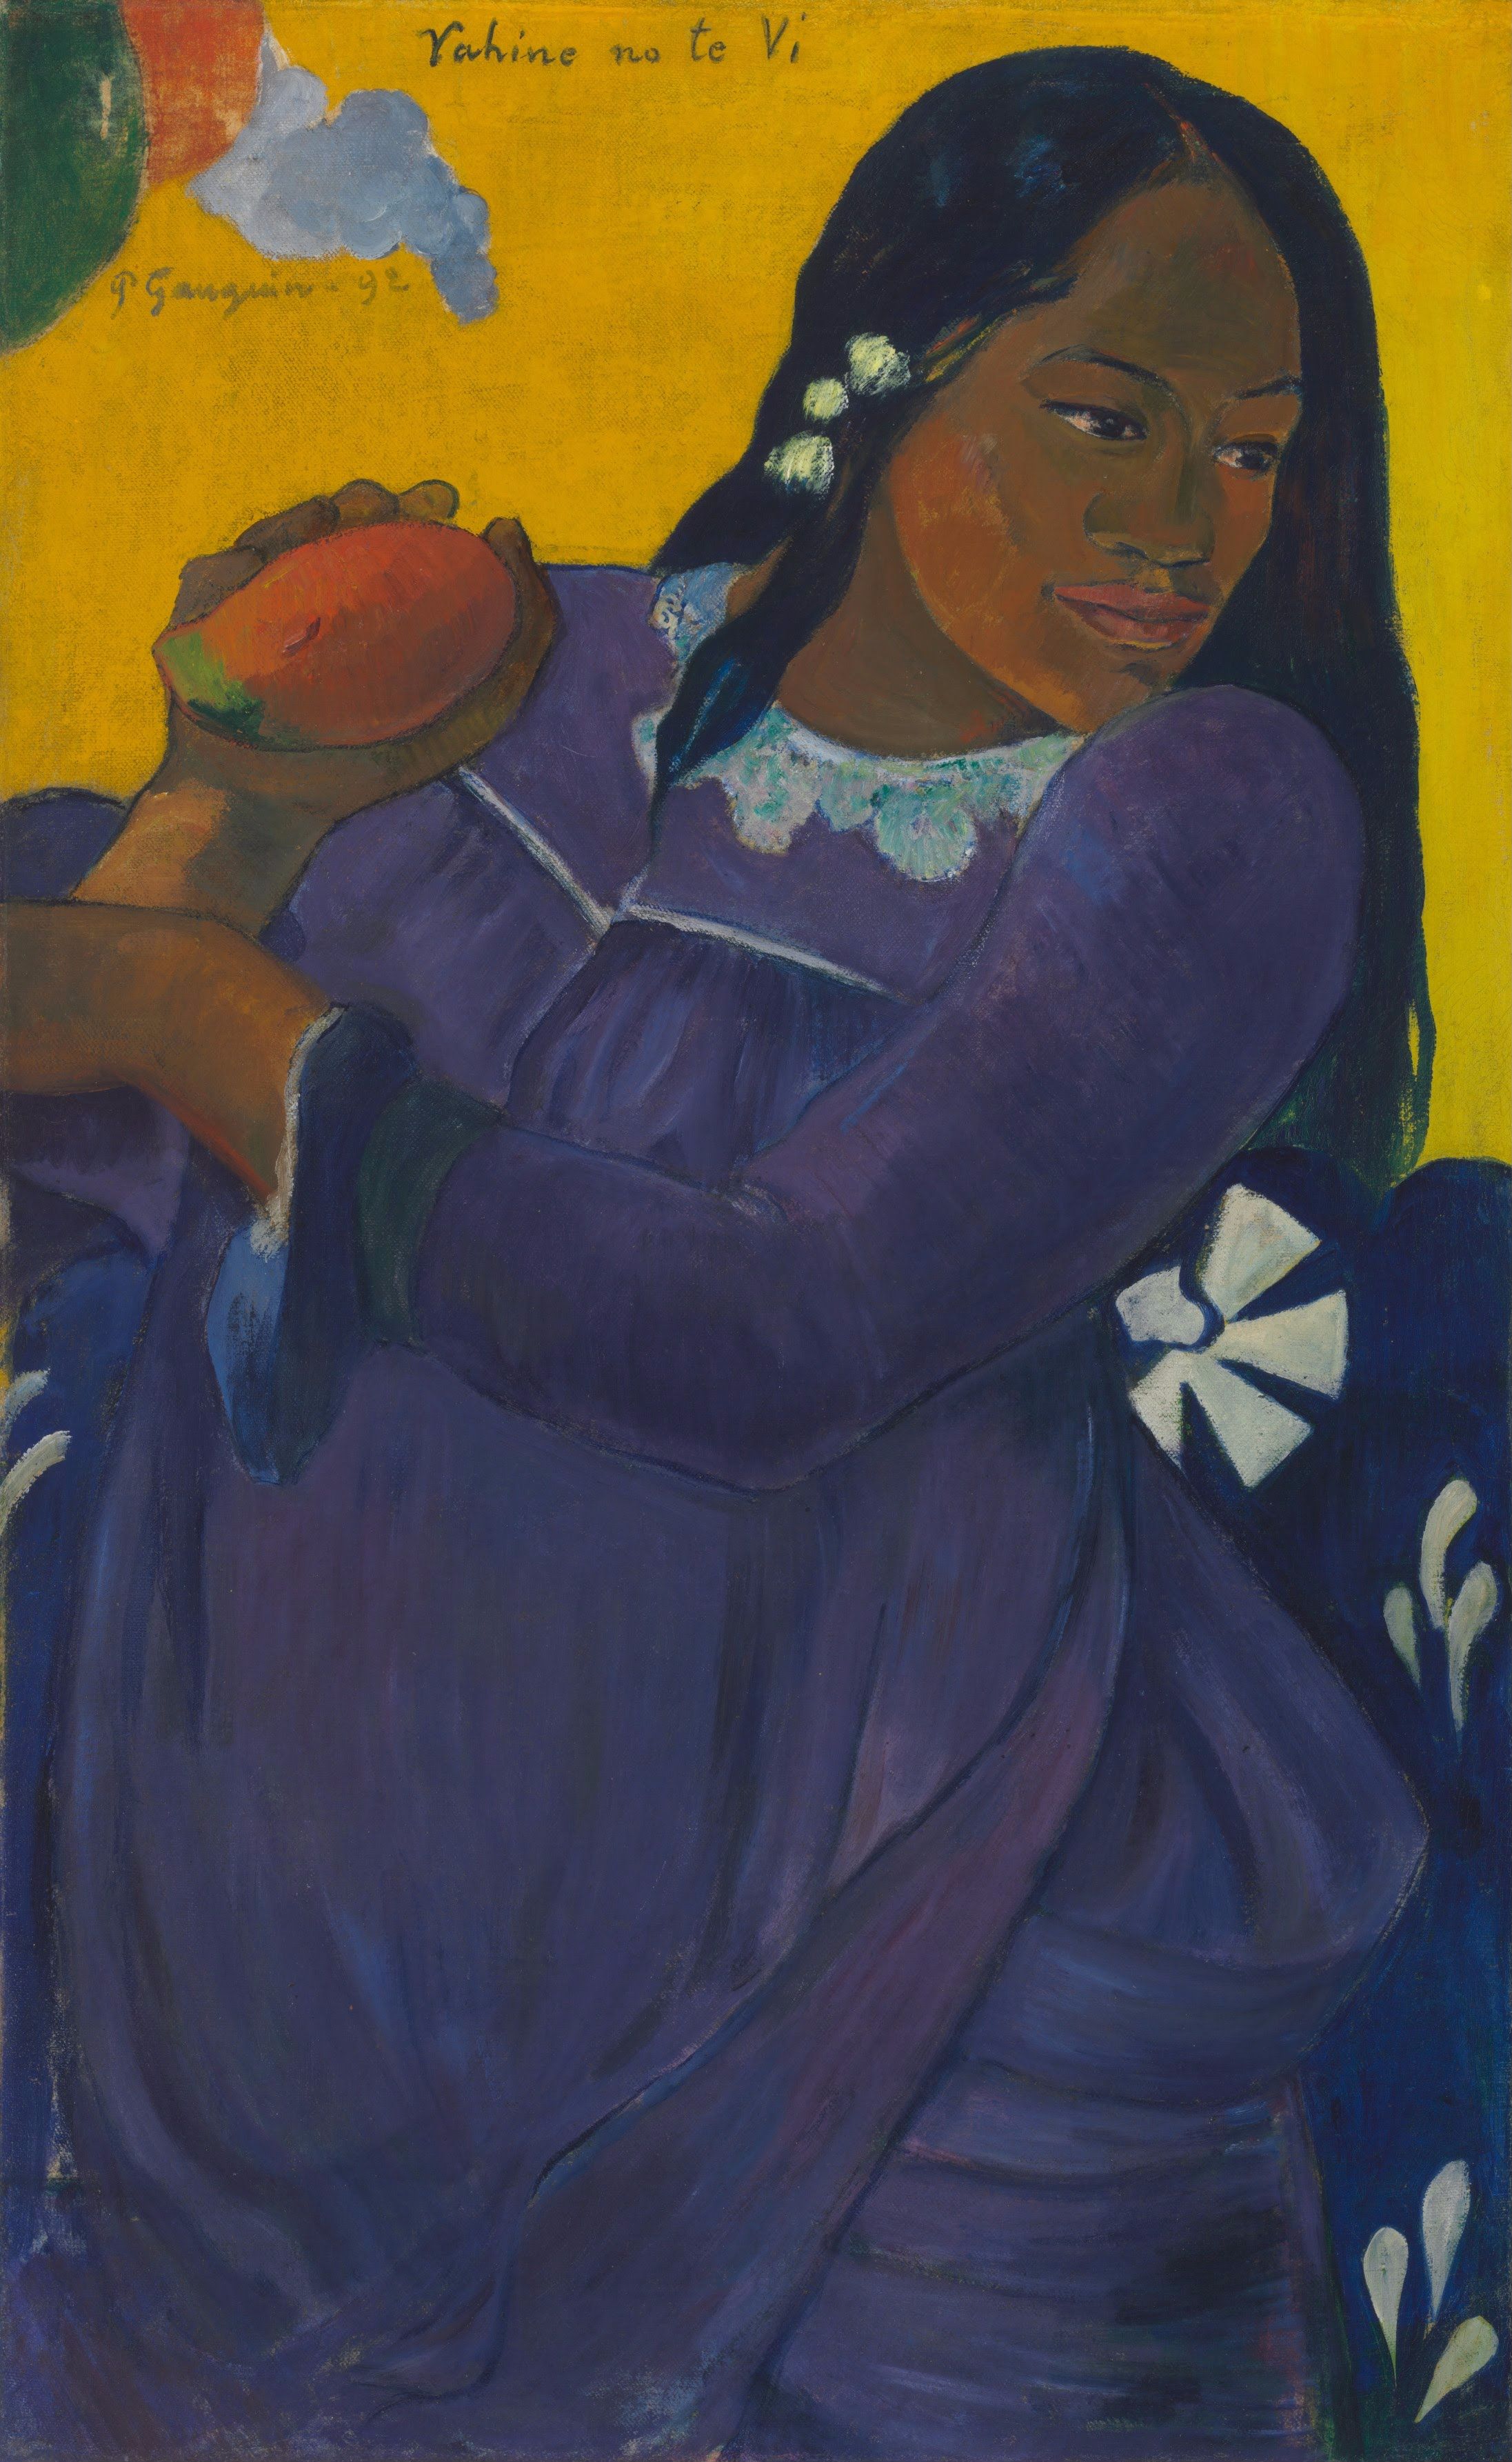 망고를 들고 있는 여인(Vahine no te vi) by Paul Gauguin - 1892 - 193.5 x 103 cm 